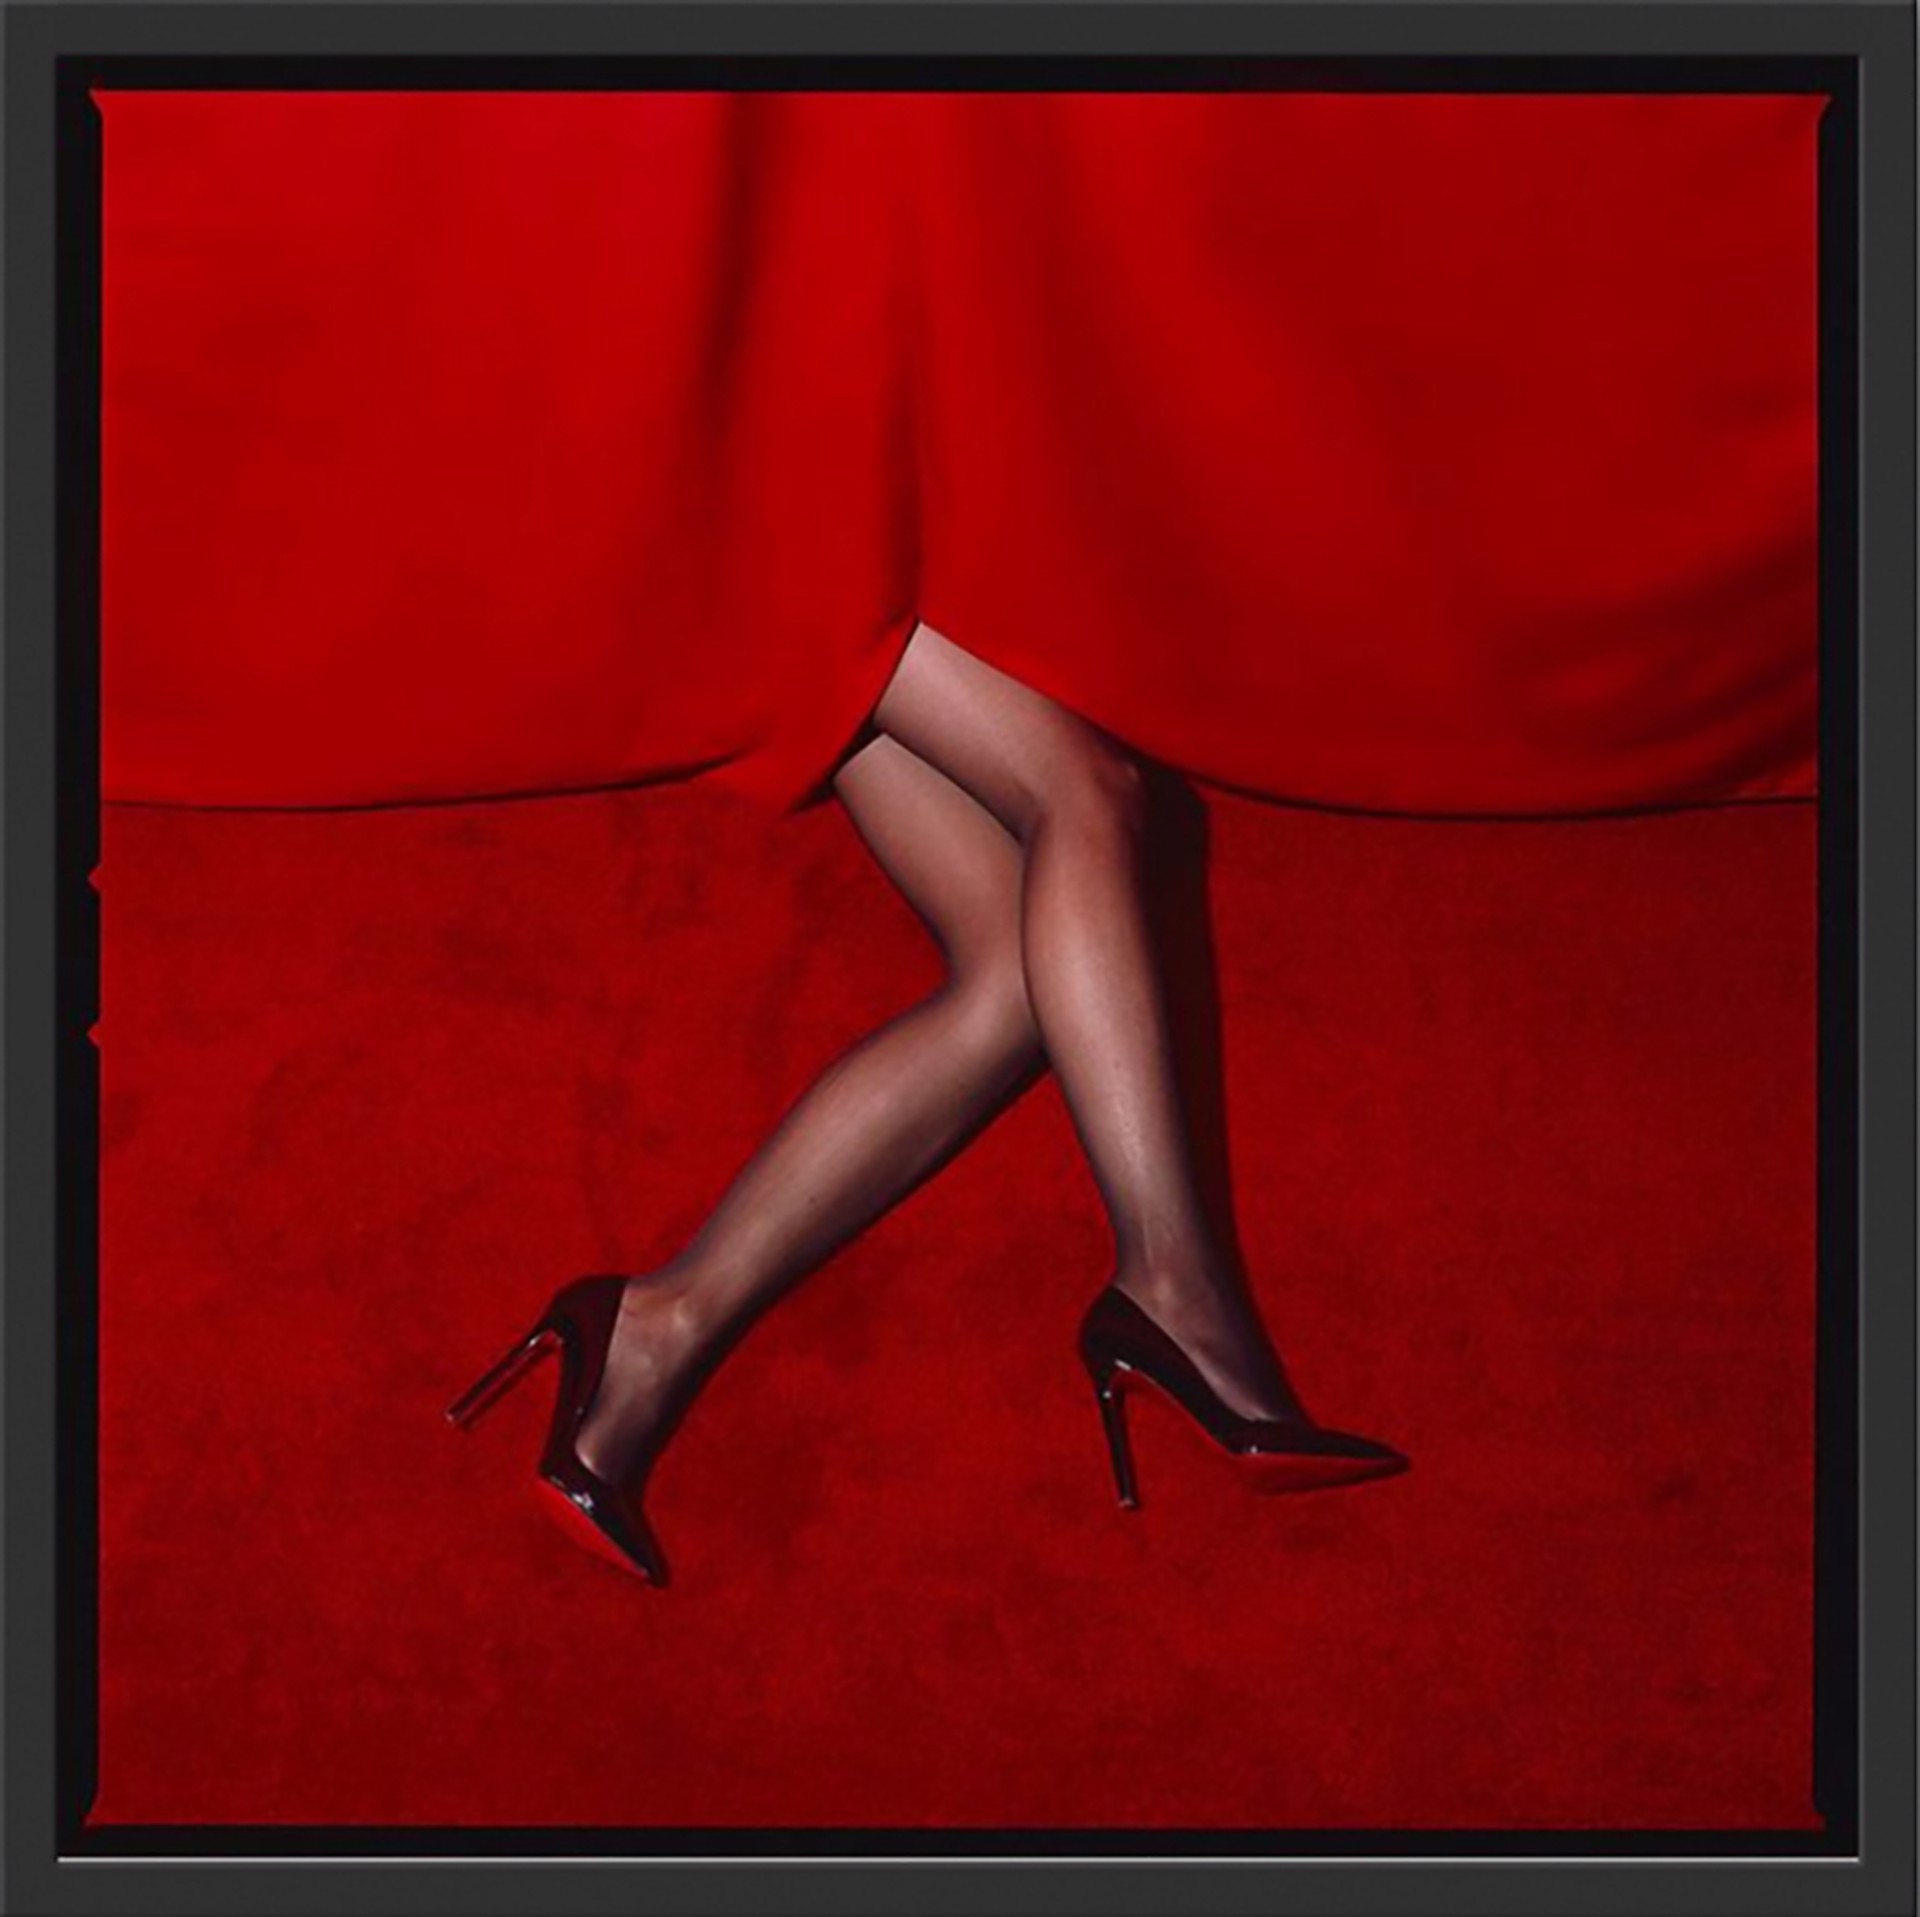 Red Legs by Tyler Shields